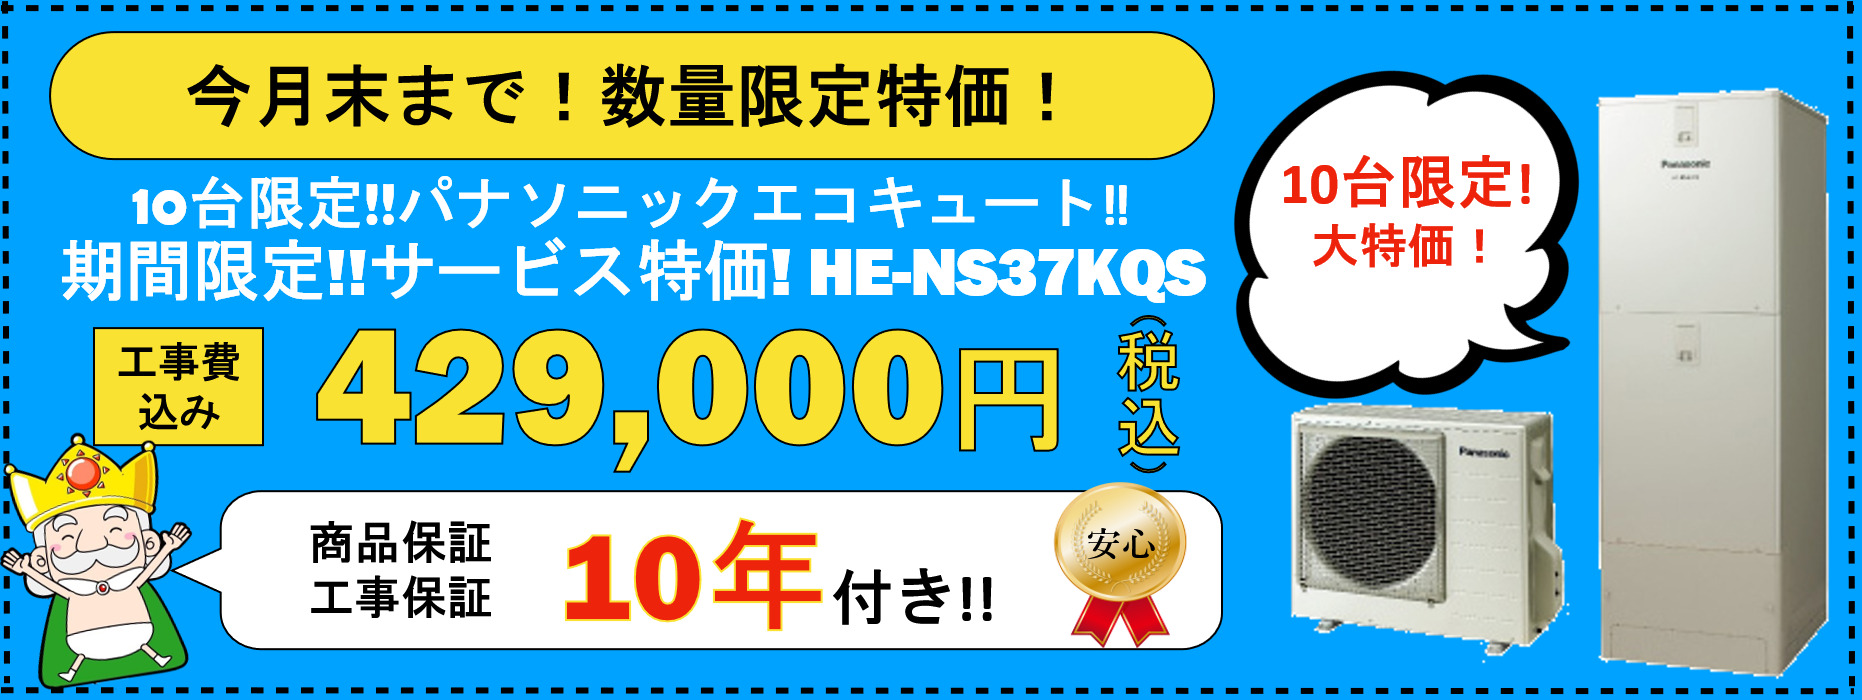 10台限定!!パナソニックエコキュート!!期間限定!!サービス特価!HE-NS37KQS